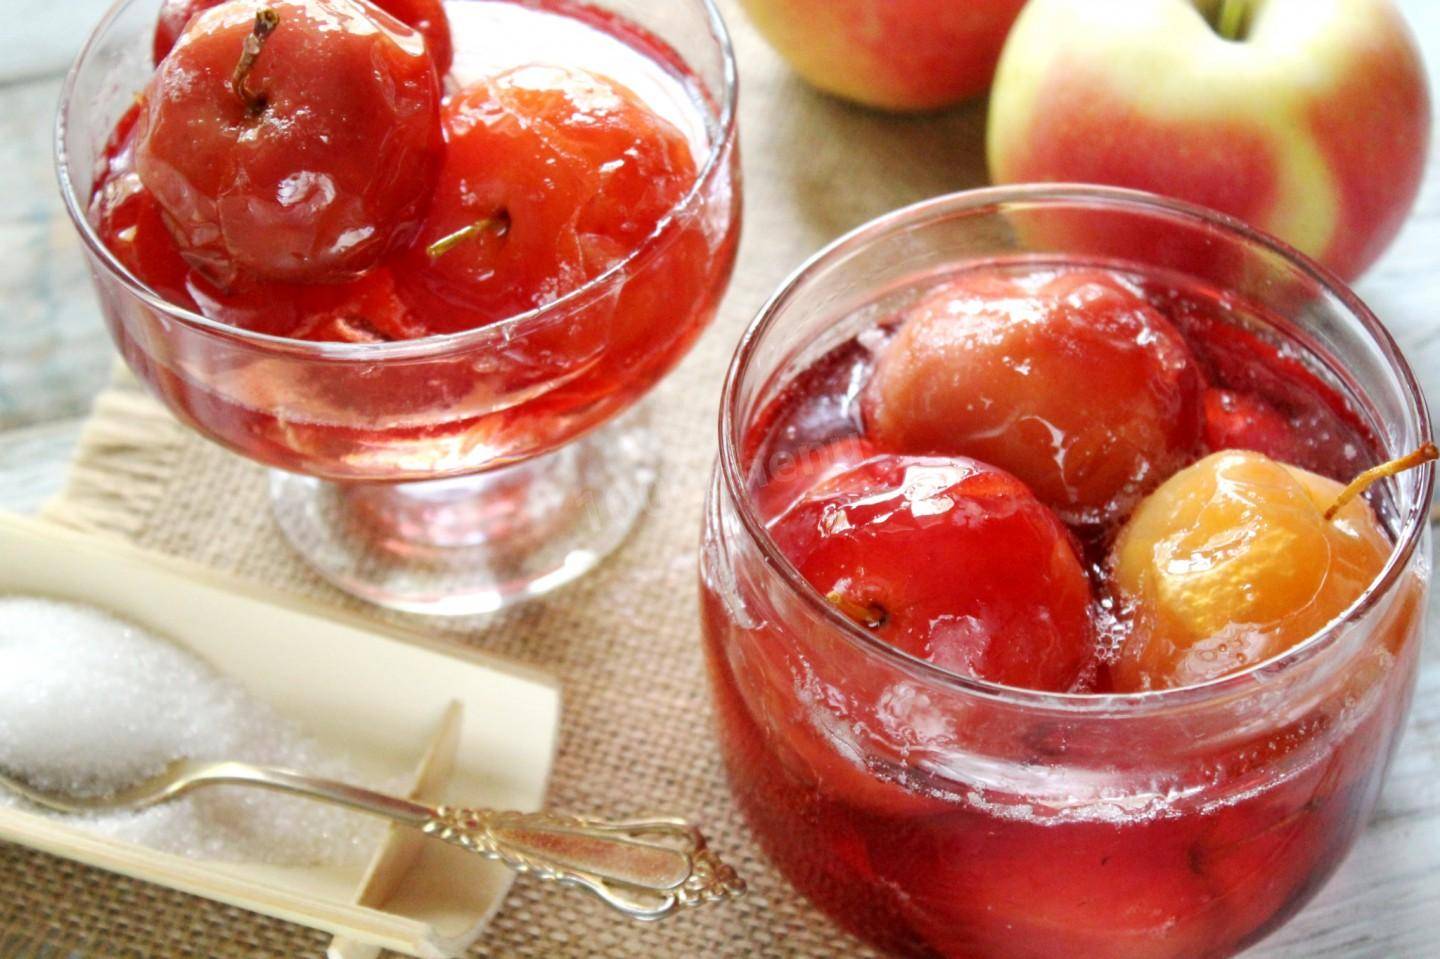 Преимущества замораживания яблок 5 лёгких способов сделать заготовку на зиму: цельные яблоки, дольки, фрукты в сахаре, в сиропе, а также яблочное пюре